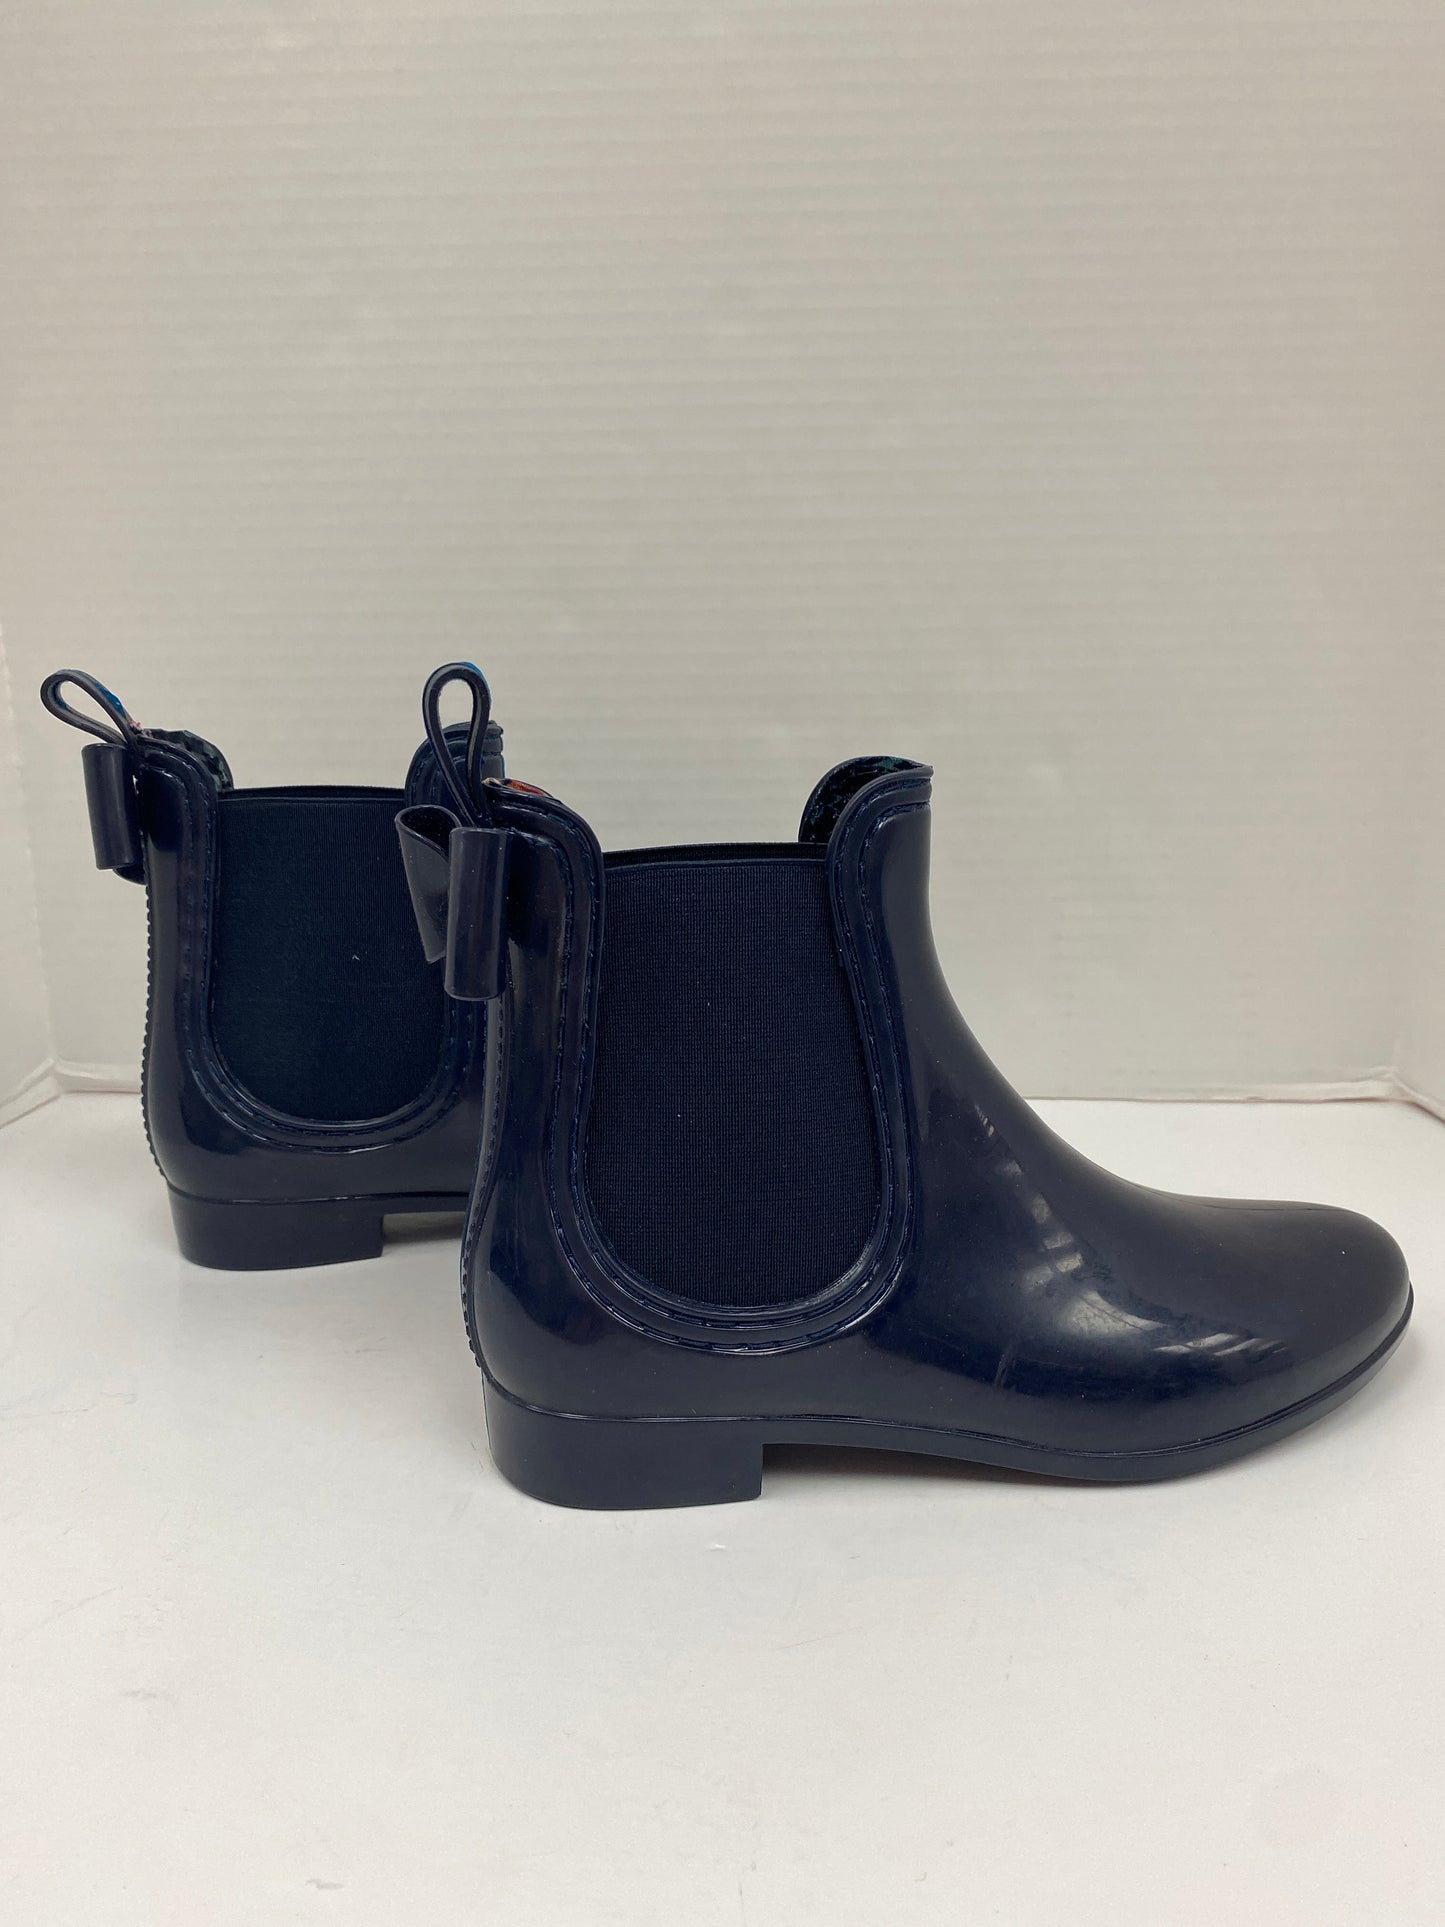 Blue Boots Rain Clarks, Size 7.5